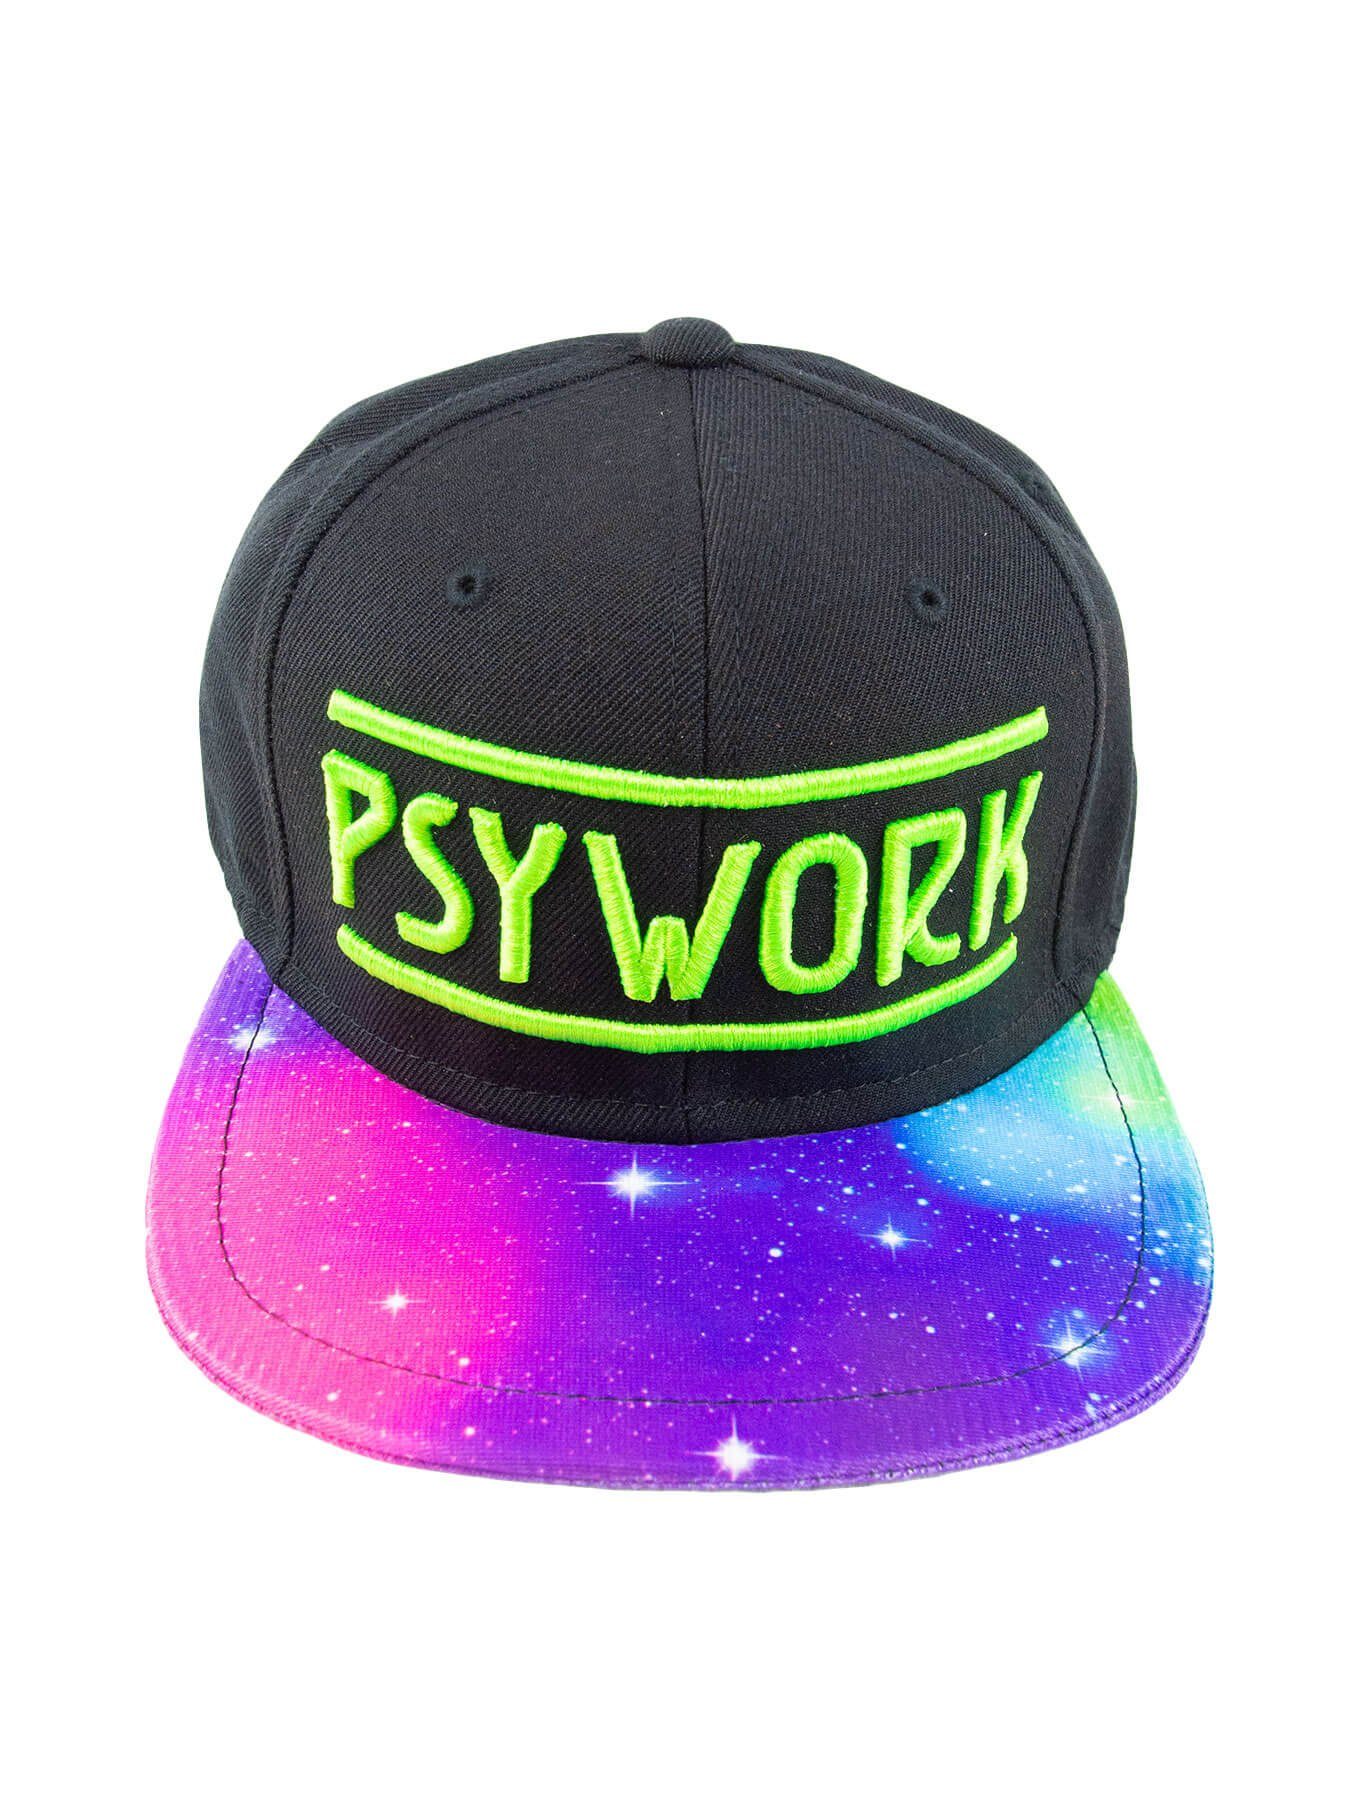 PSYWORK Snapback Cap Schwarzlicht Black Cap Neon "Psychedelic Universe", Grün UV-aktiv, leuchtet unter Schwarzlicht